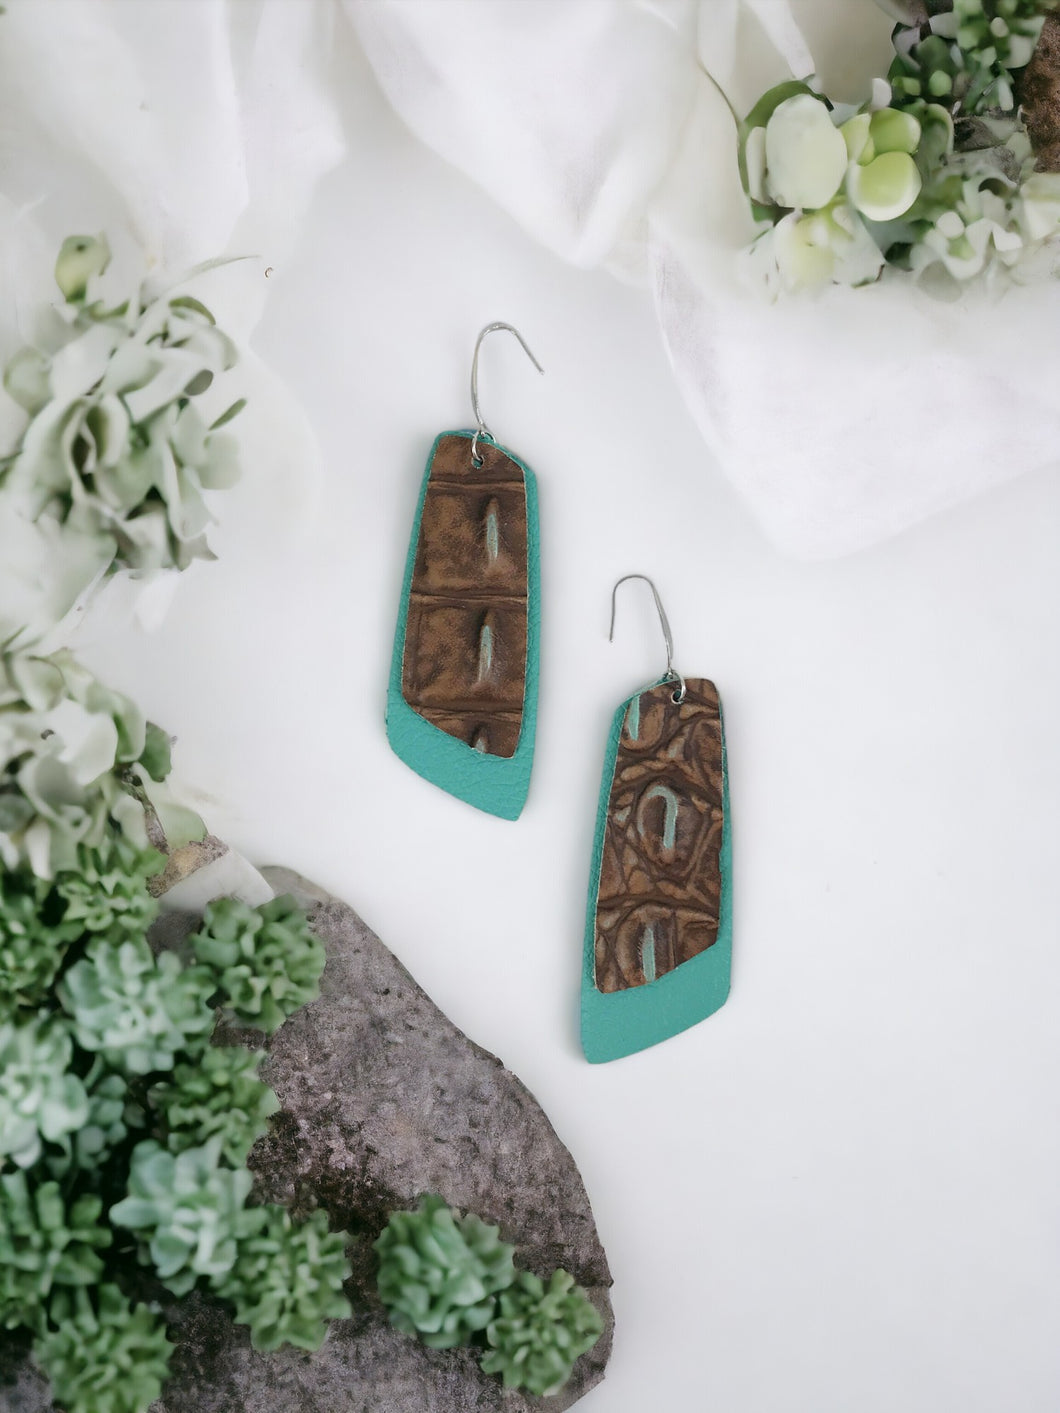 Aqua Leather and Turquoise Crocodile Leather Earrings - E19-1154